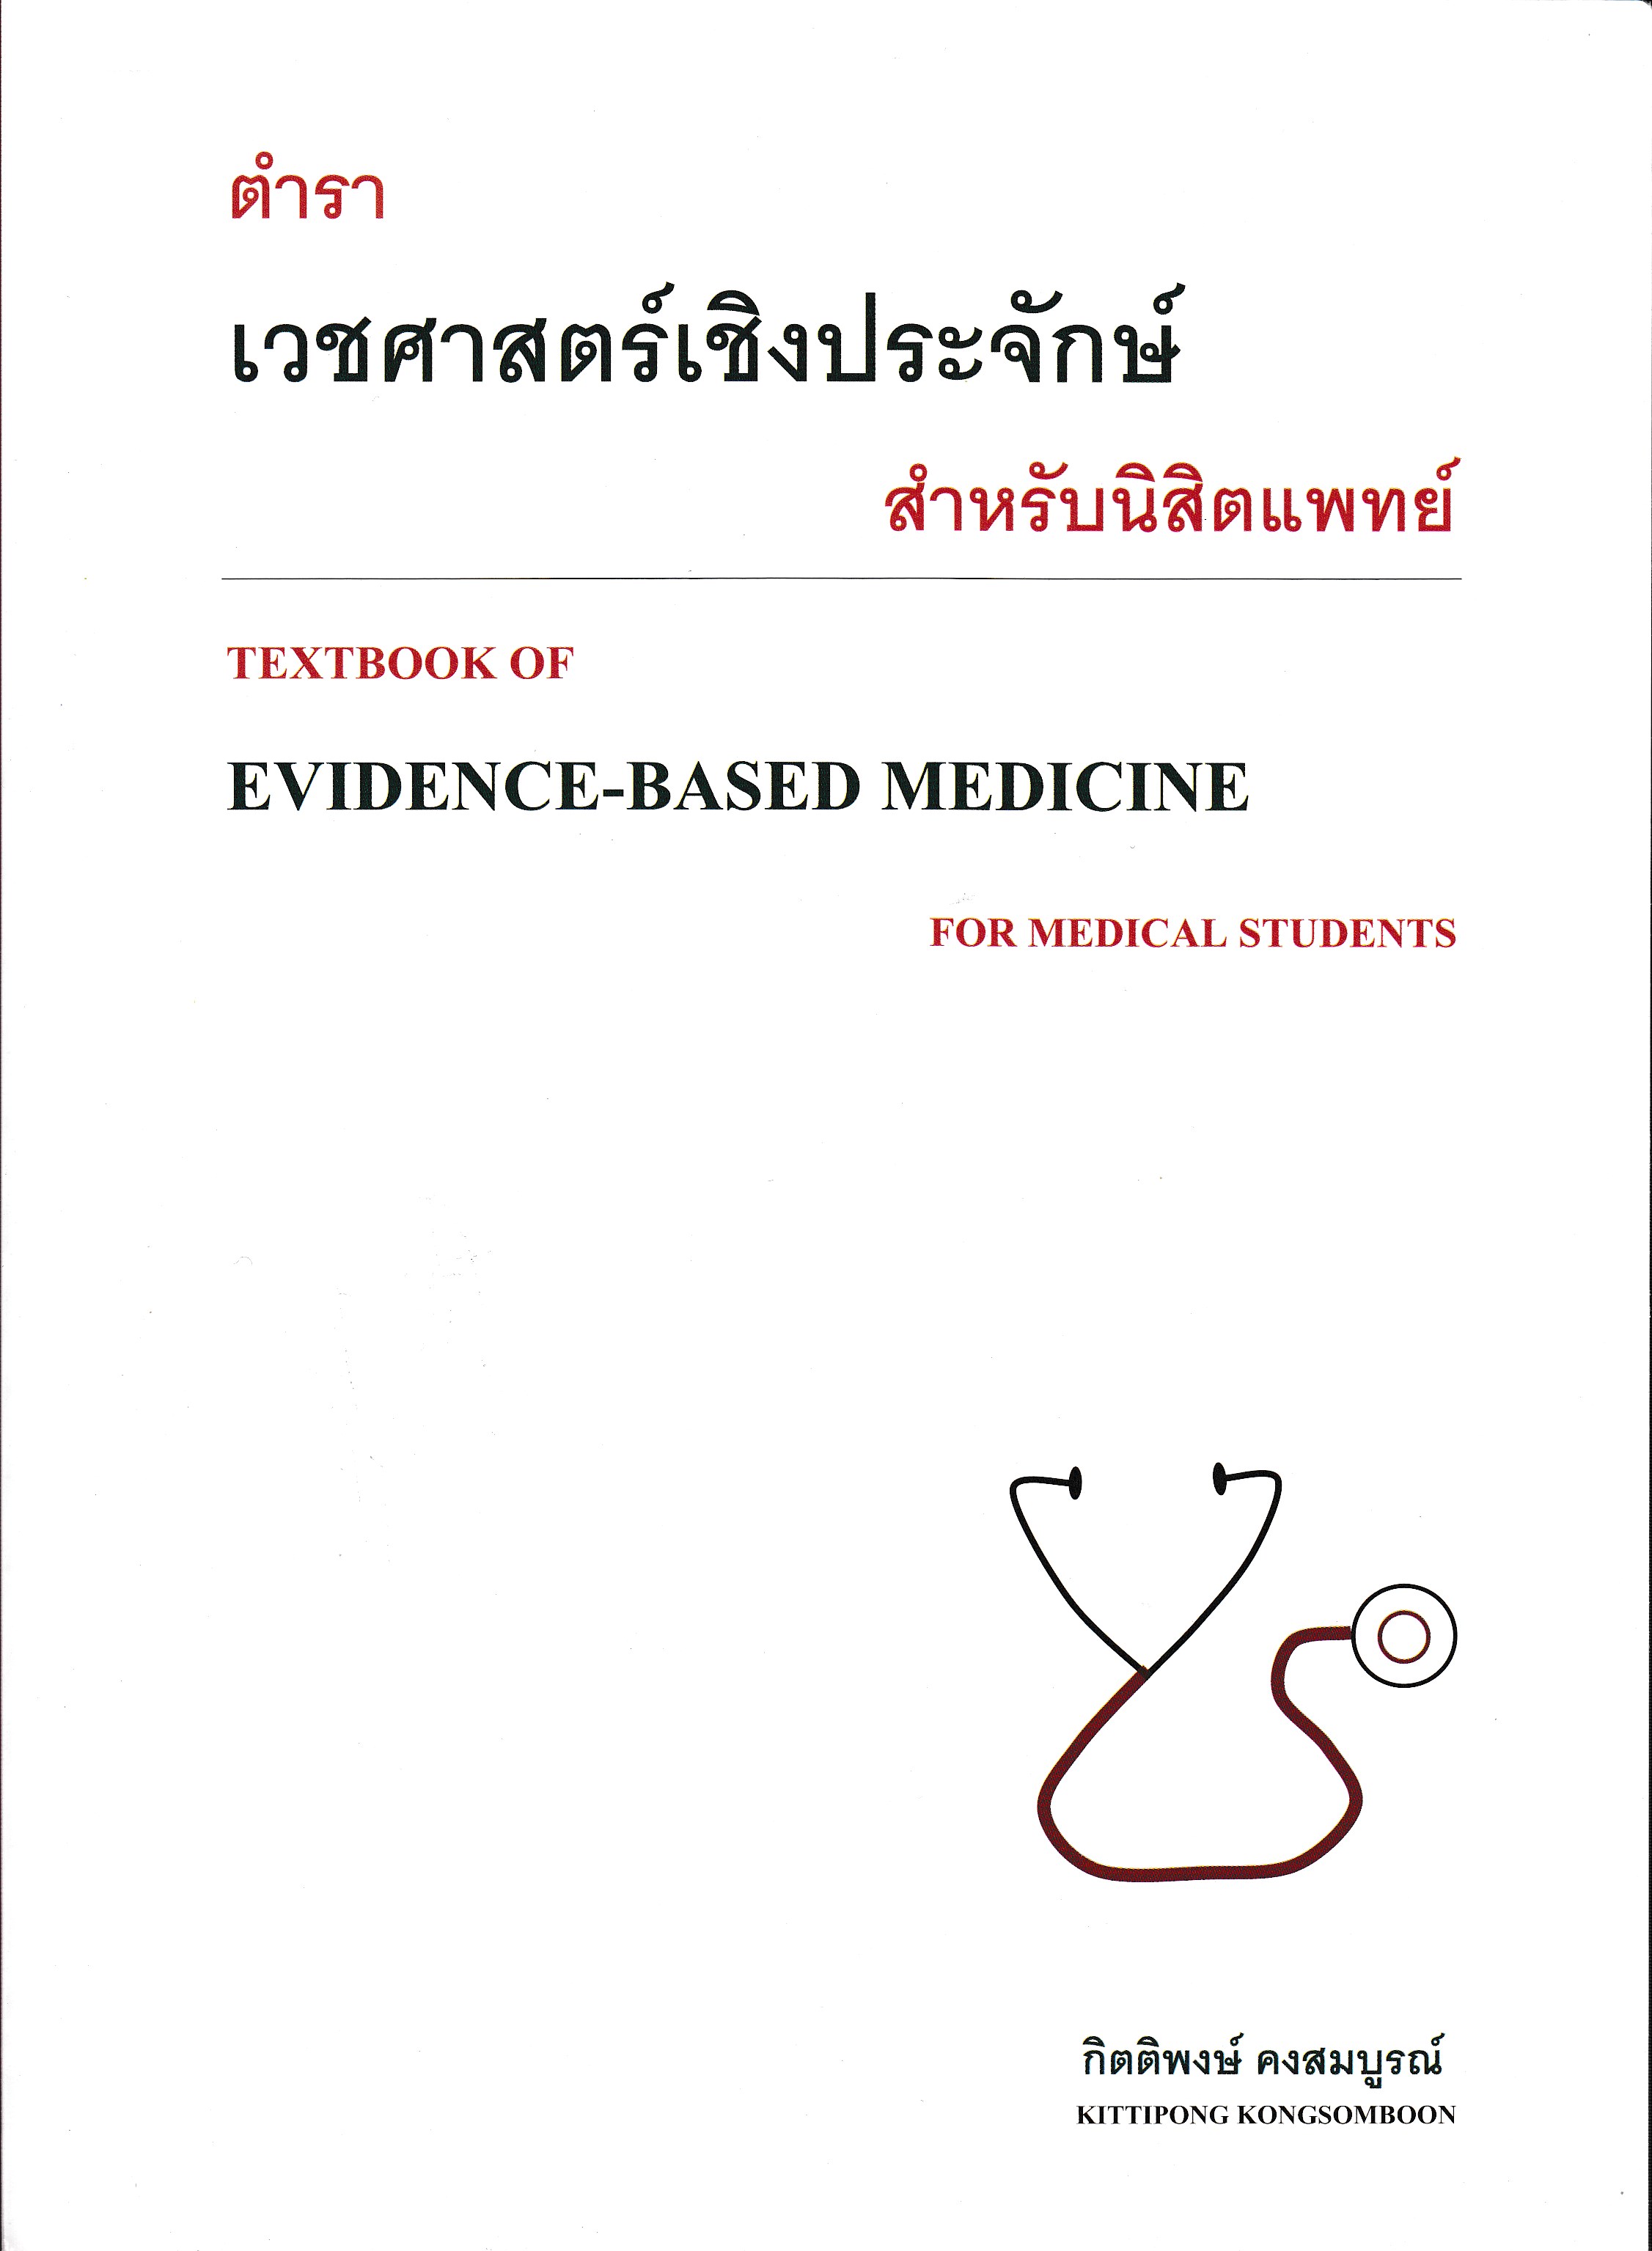 ตำราเวชศาสตร์เชิงประจักษ์สำหรับนิสิตแพทย์ = Textbook of evidence-based medicine for medical students